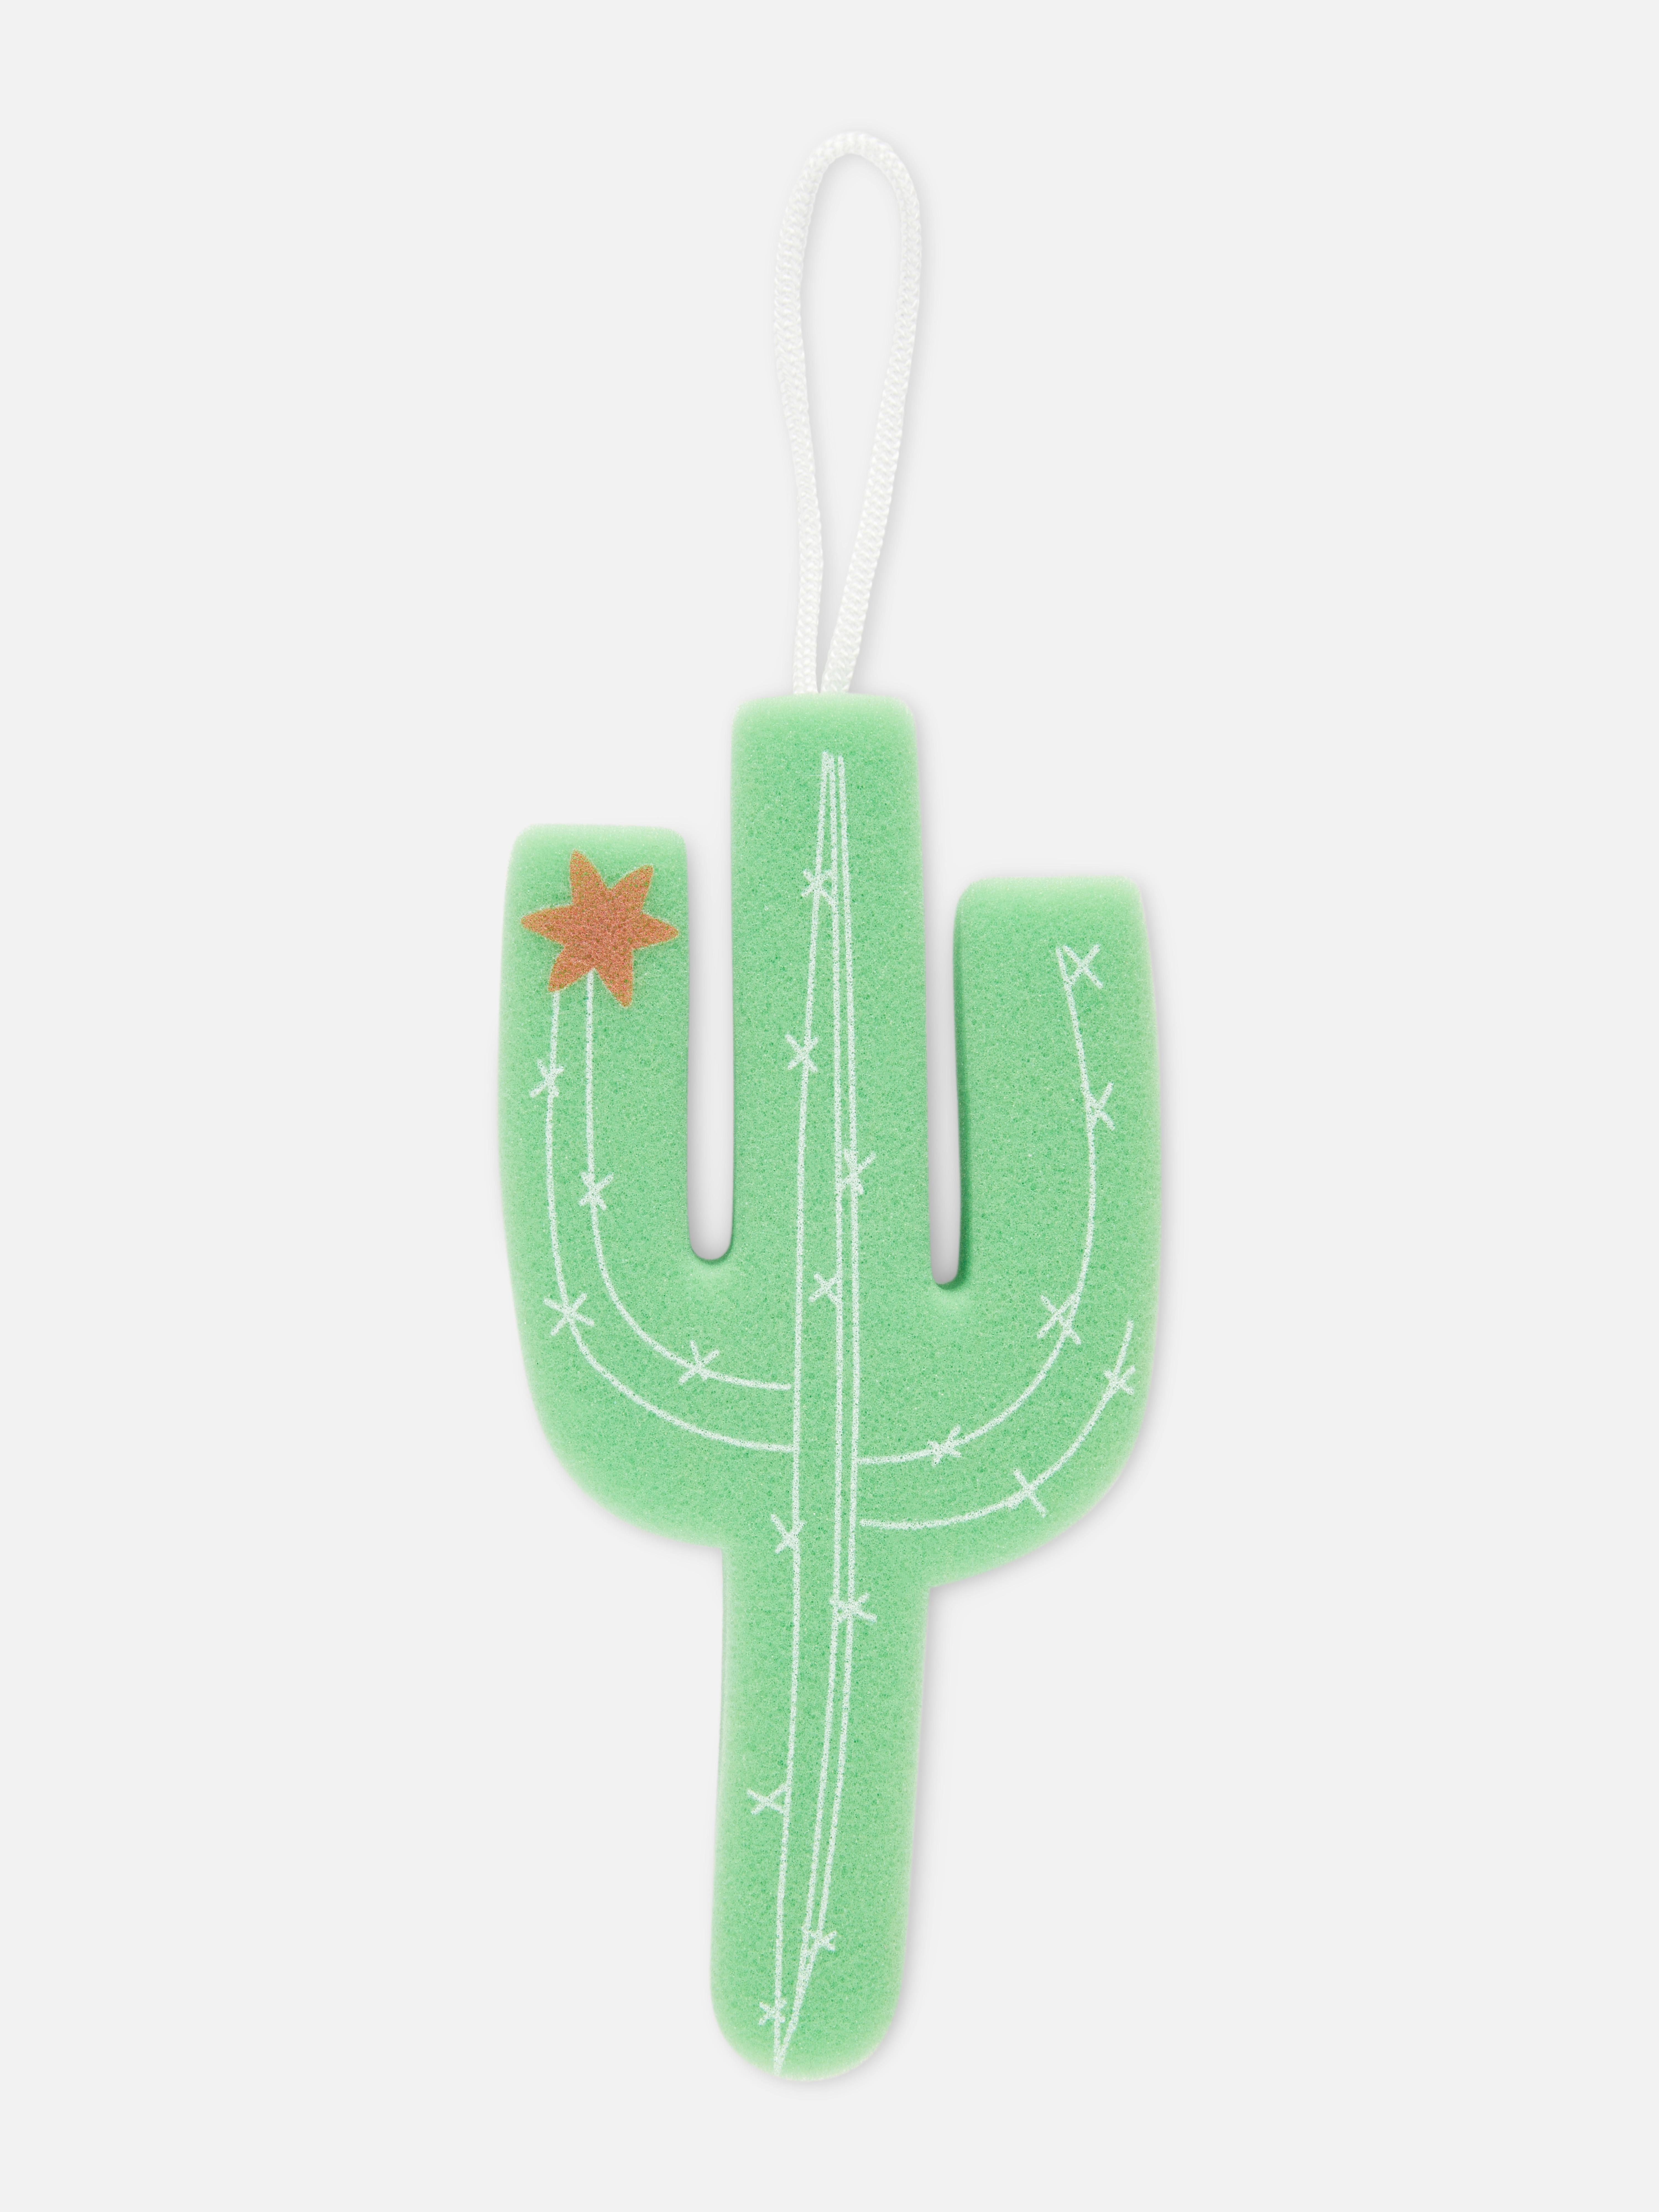 Cactus Body Sponge